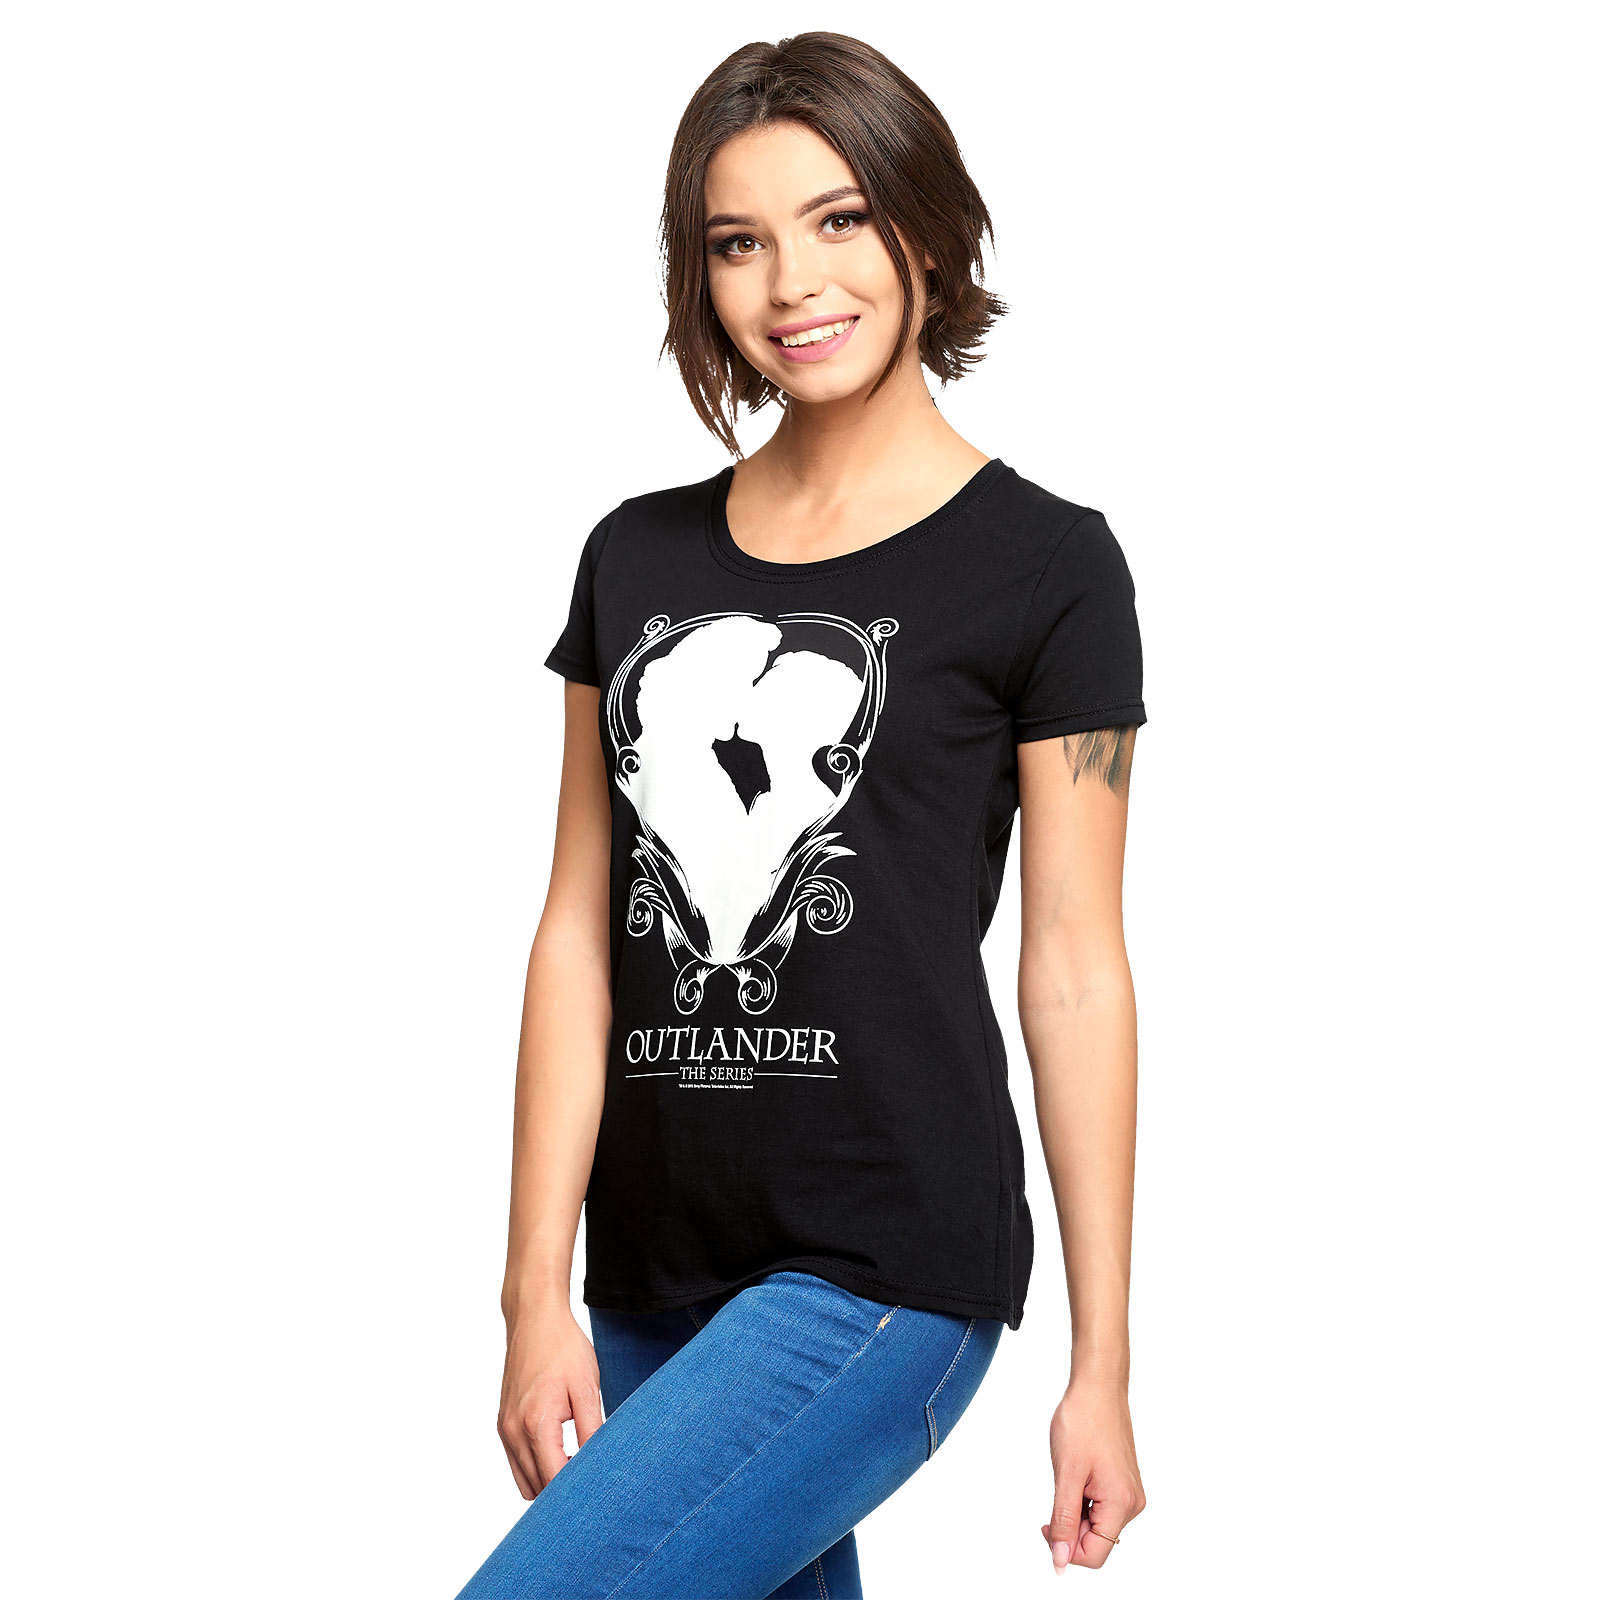 Outlander - T-shirt femme Kiss noir